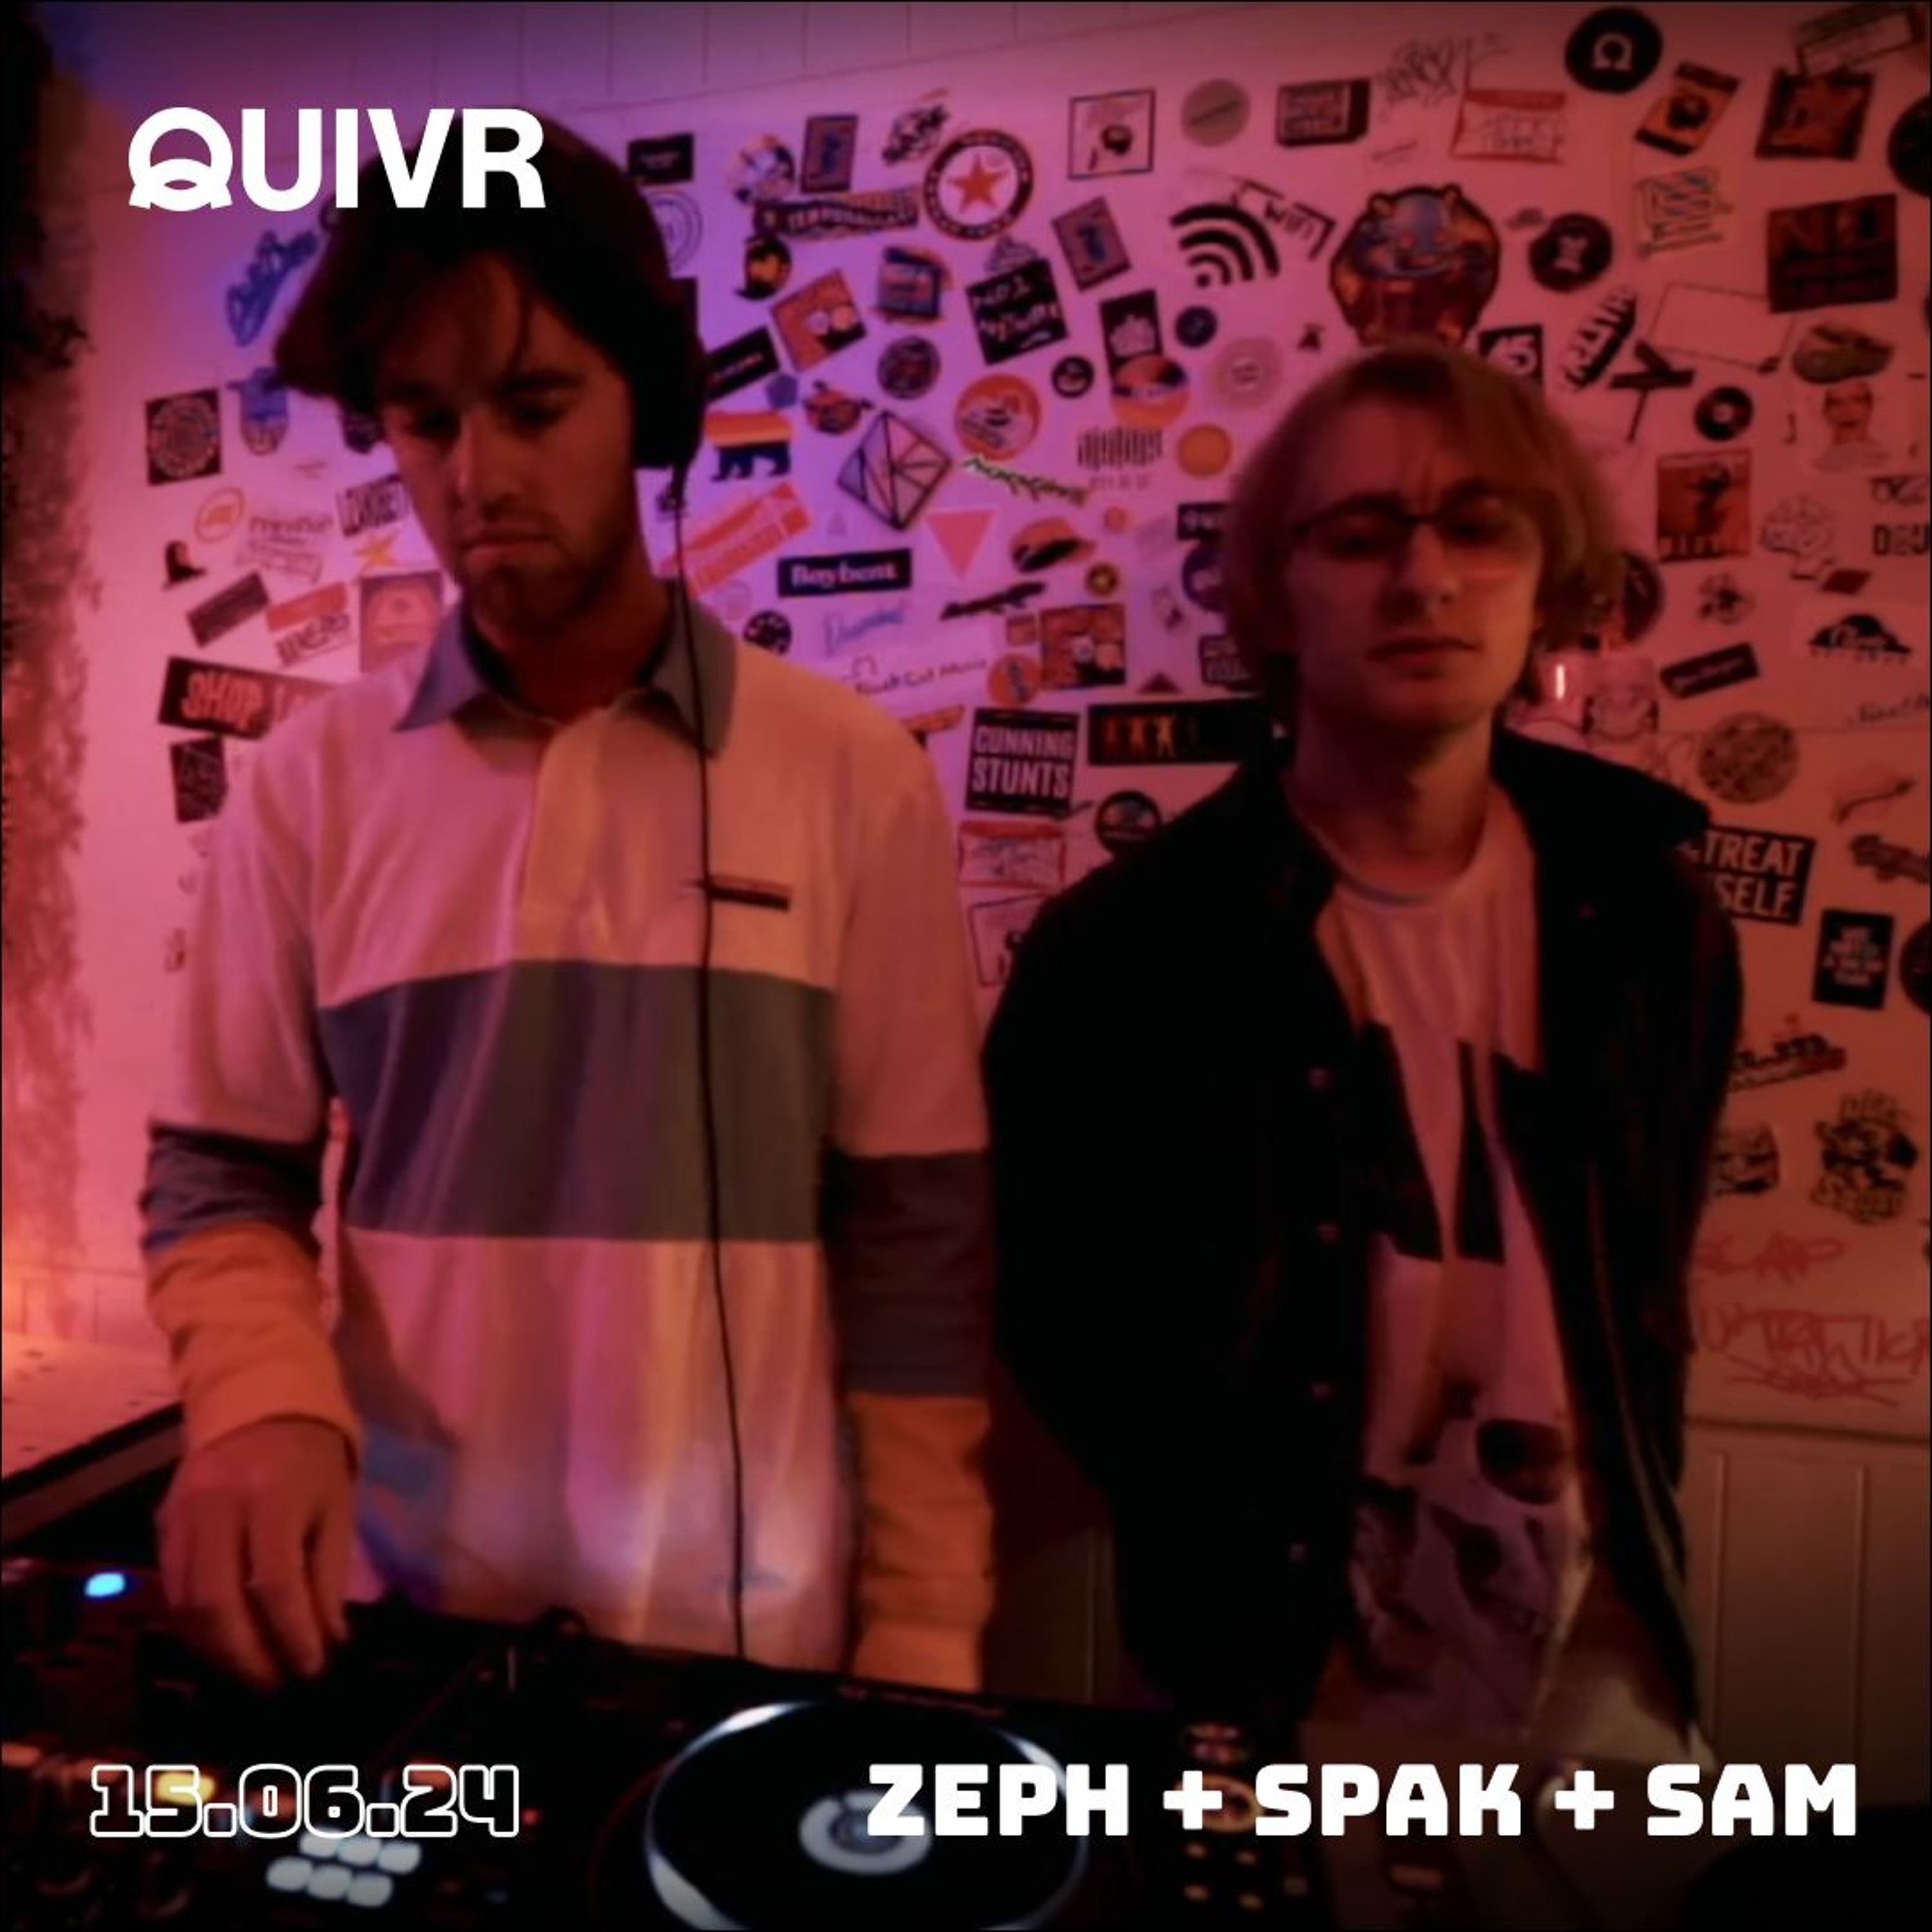 Zeph + Spak + Sam | QUIVR | 15-06-24